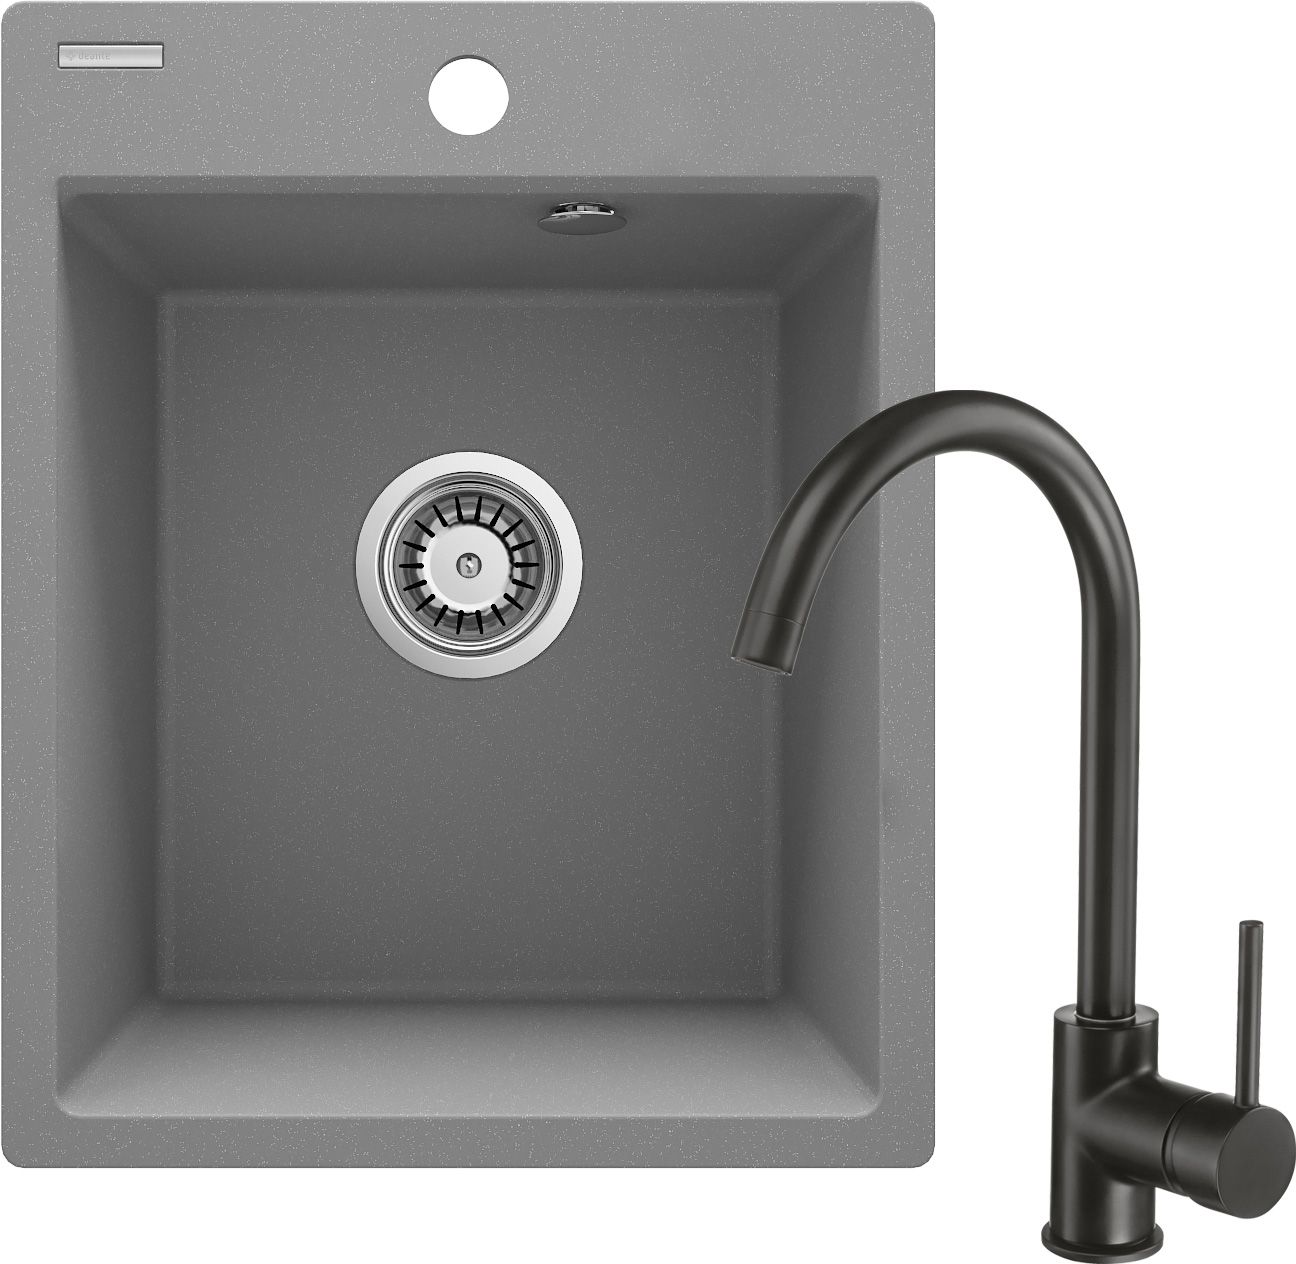 Lavello in granito con rubinetto, 1-vaschetta - ZRCBS103 - Główne zdjęcie produktowe